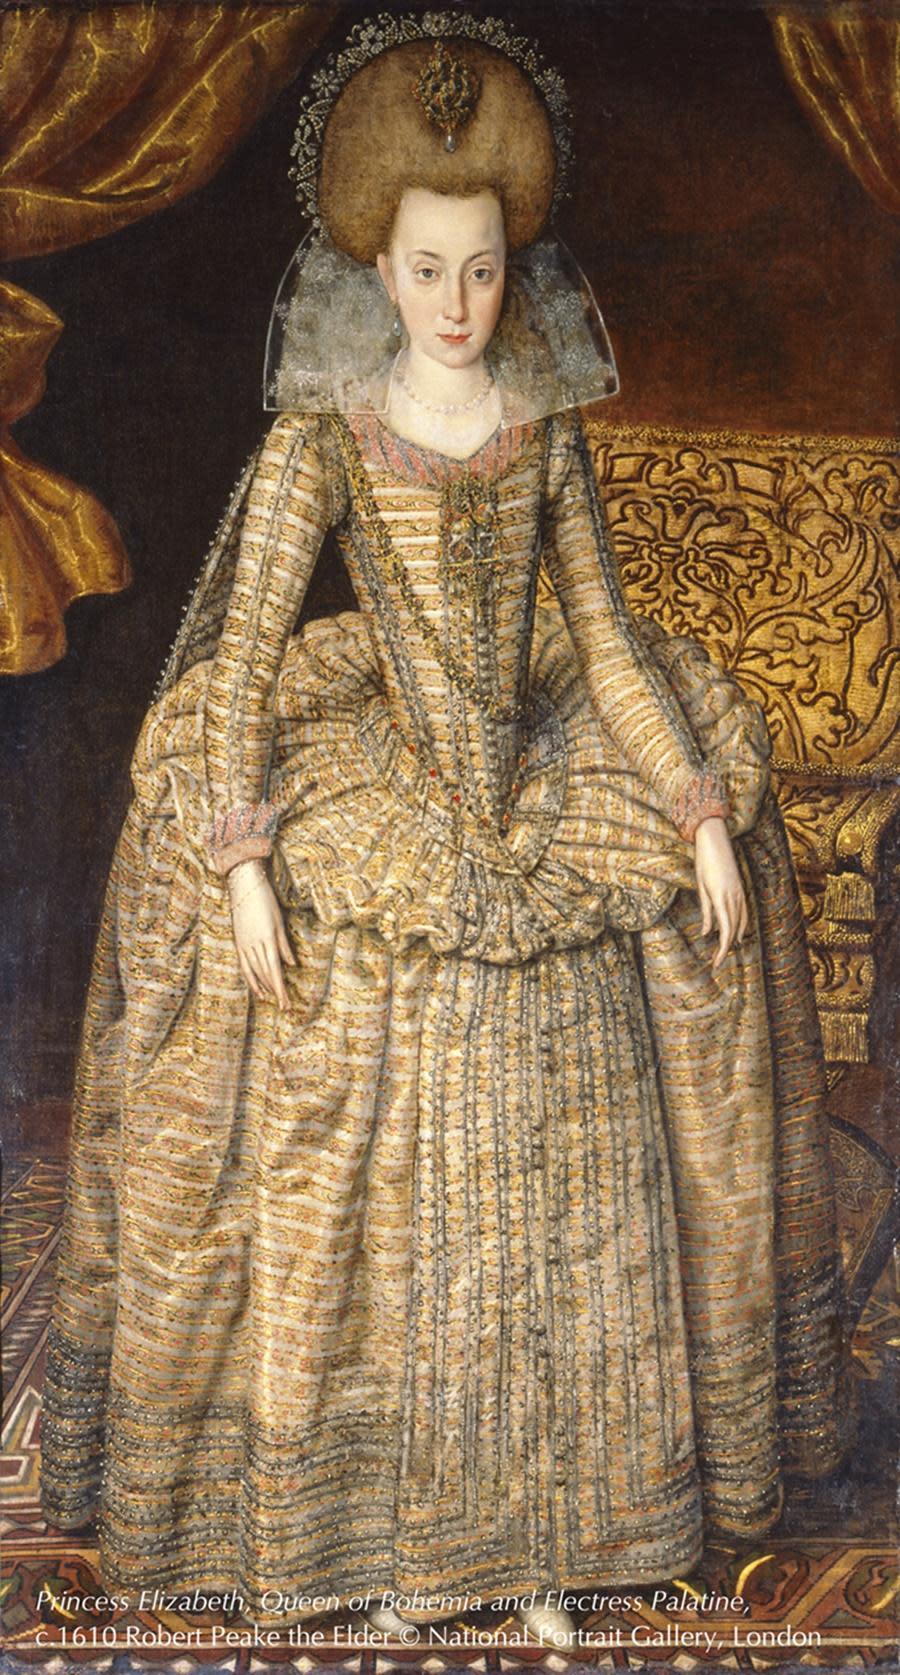 〈伊麗莎白公主，波西米亞王后暨普法爾茨選帝侯夫人〉是由老羅伯特皮克在大約1610年創作的斯圖亞特公主畫像，當時公主年僅14歲，主要彰顯她的美貌與財富。（英國國家肖像藝廊提供）